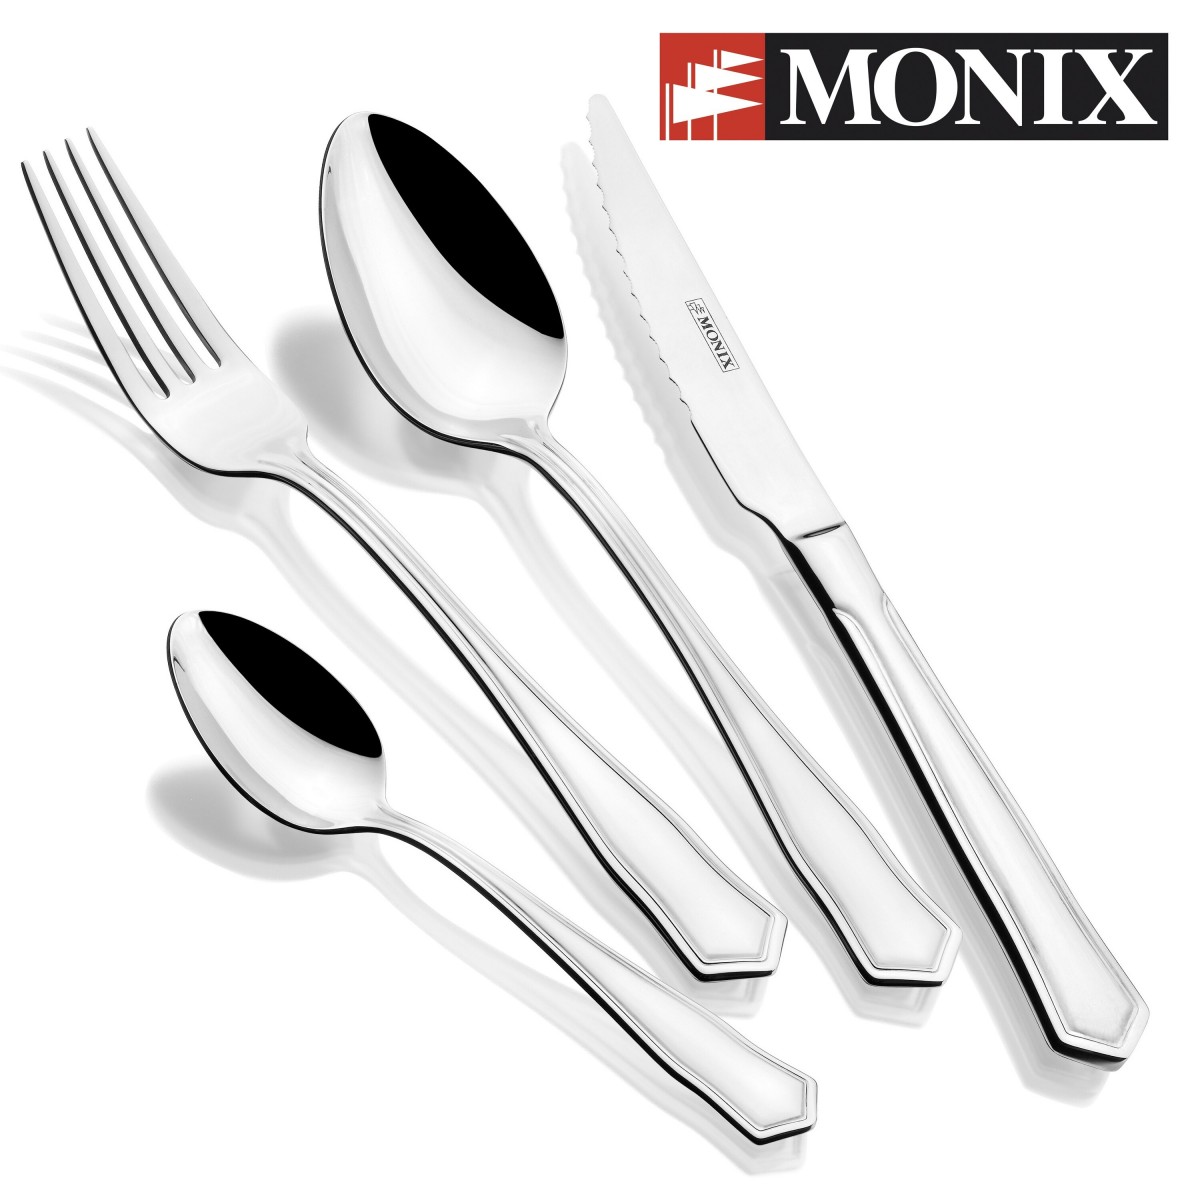 Monix Cuberteria 24 piezas fabricada en acero inoxidable, Milan monix